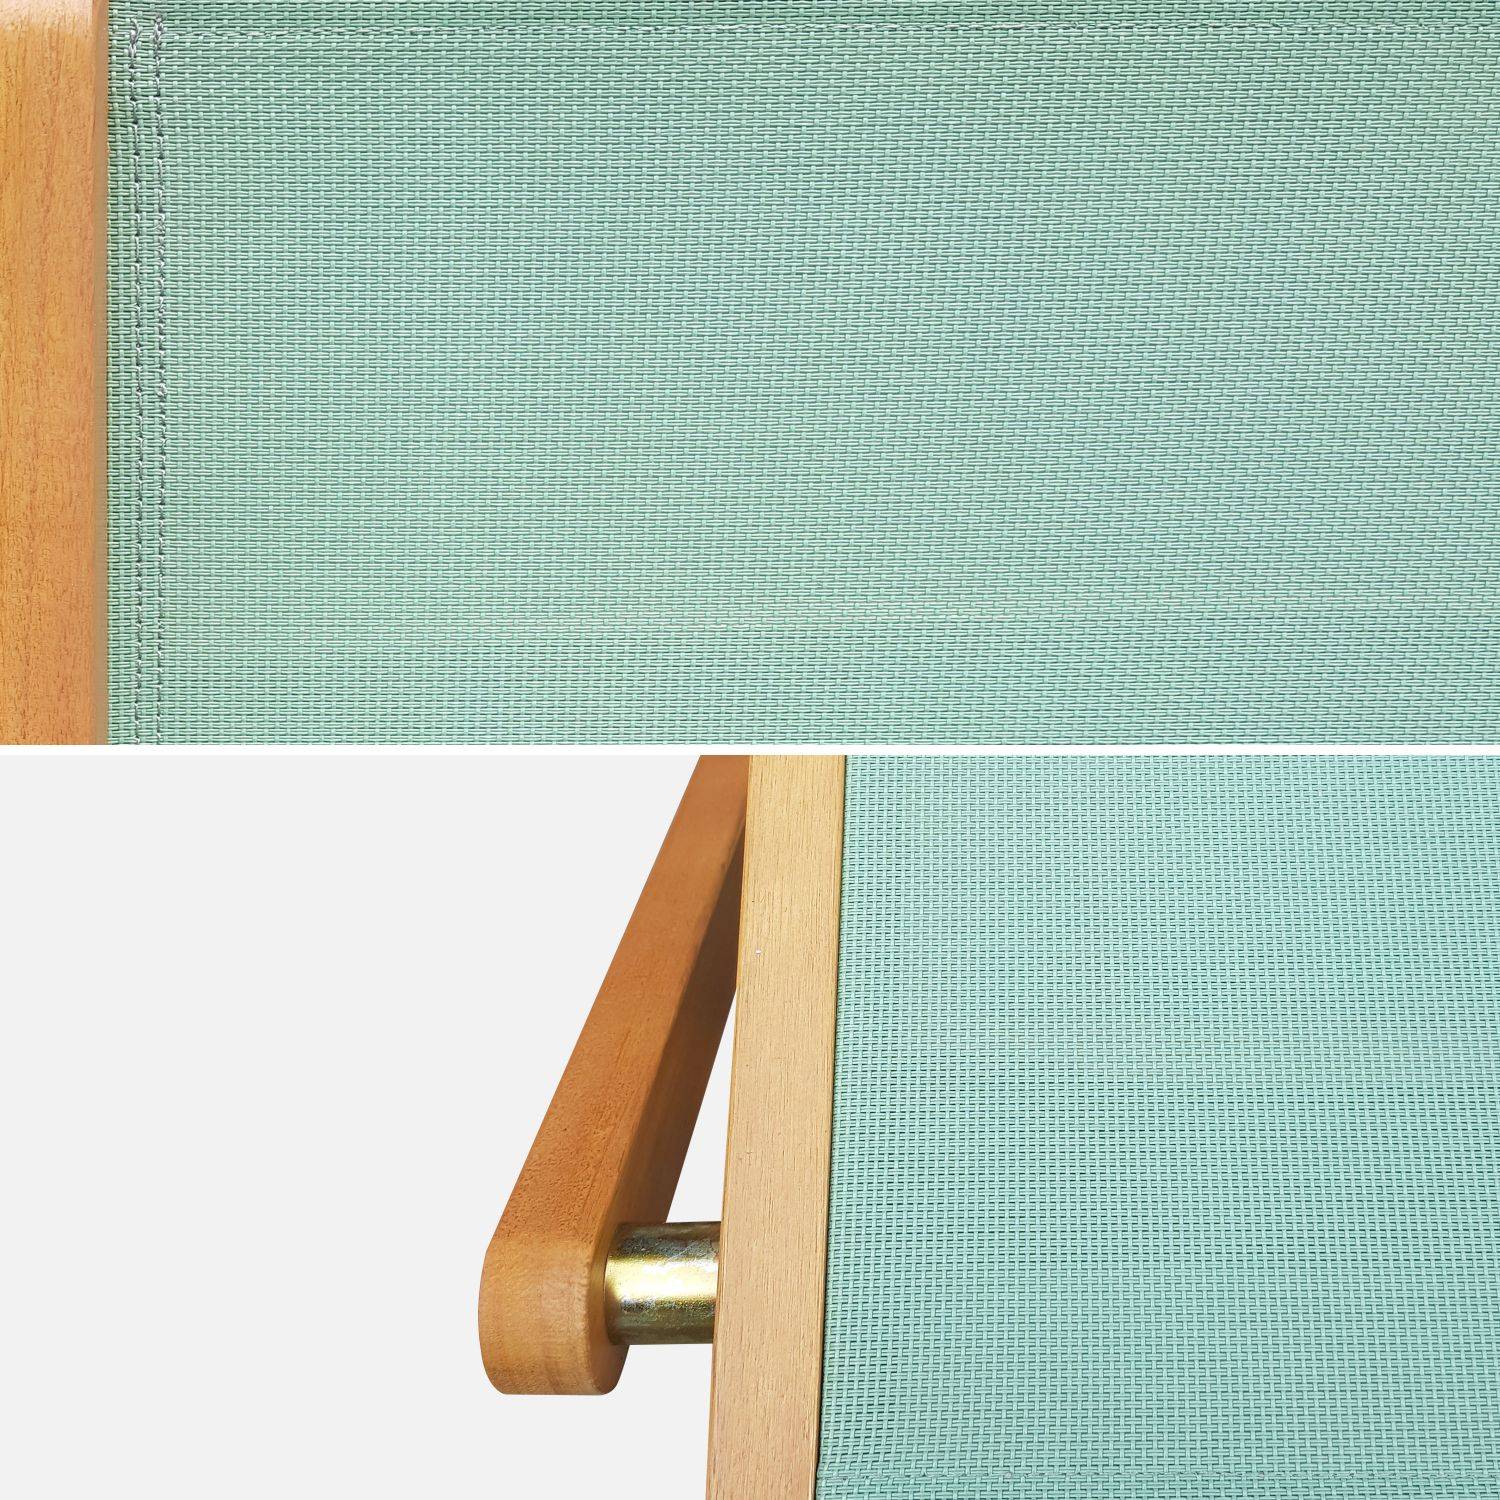 Gartenstühle aus Holz und Textilene - Almeria graugrün - 2 Klappstühle aus geöltem FSC Eukalyptusholz und Textilene Photo3